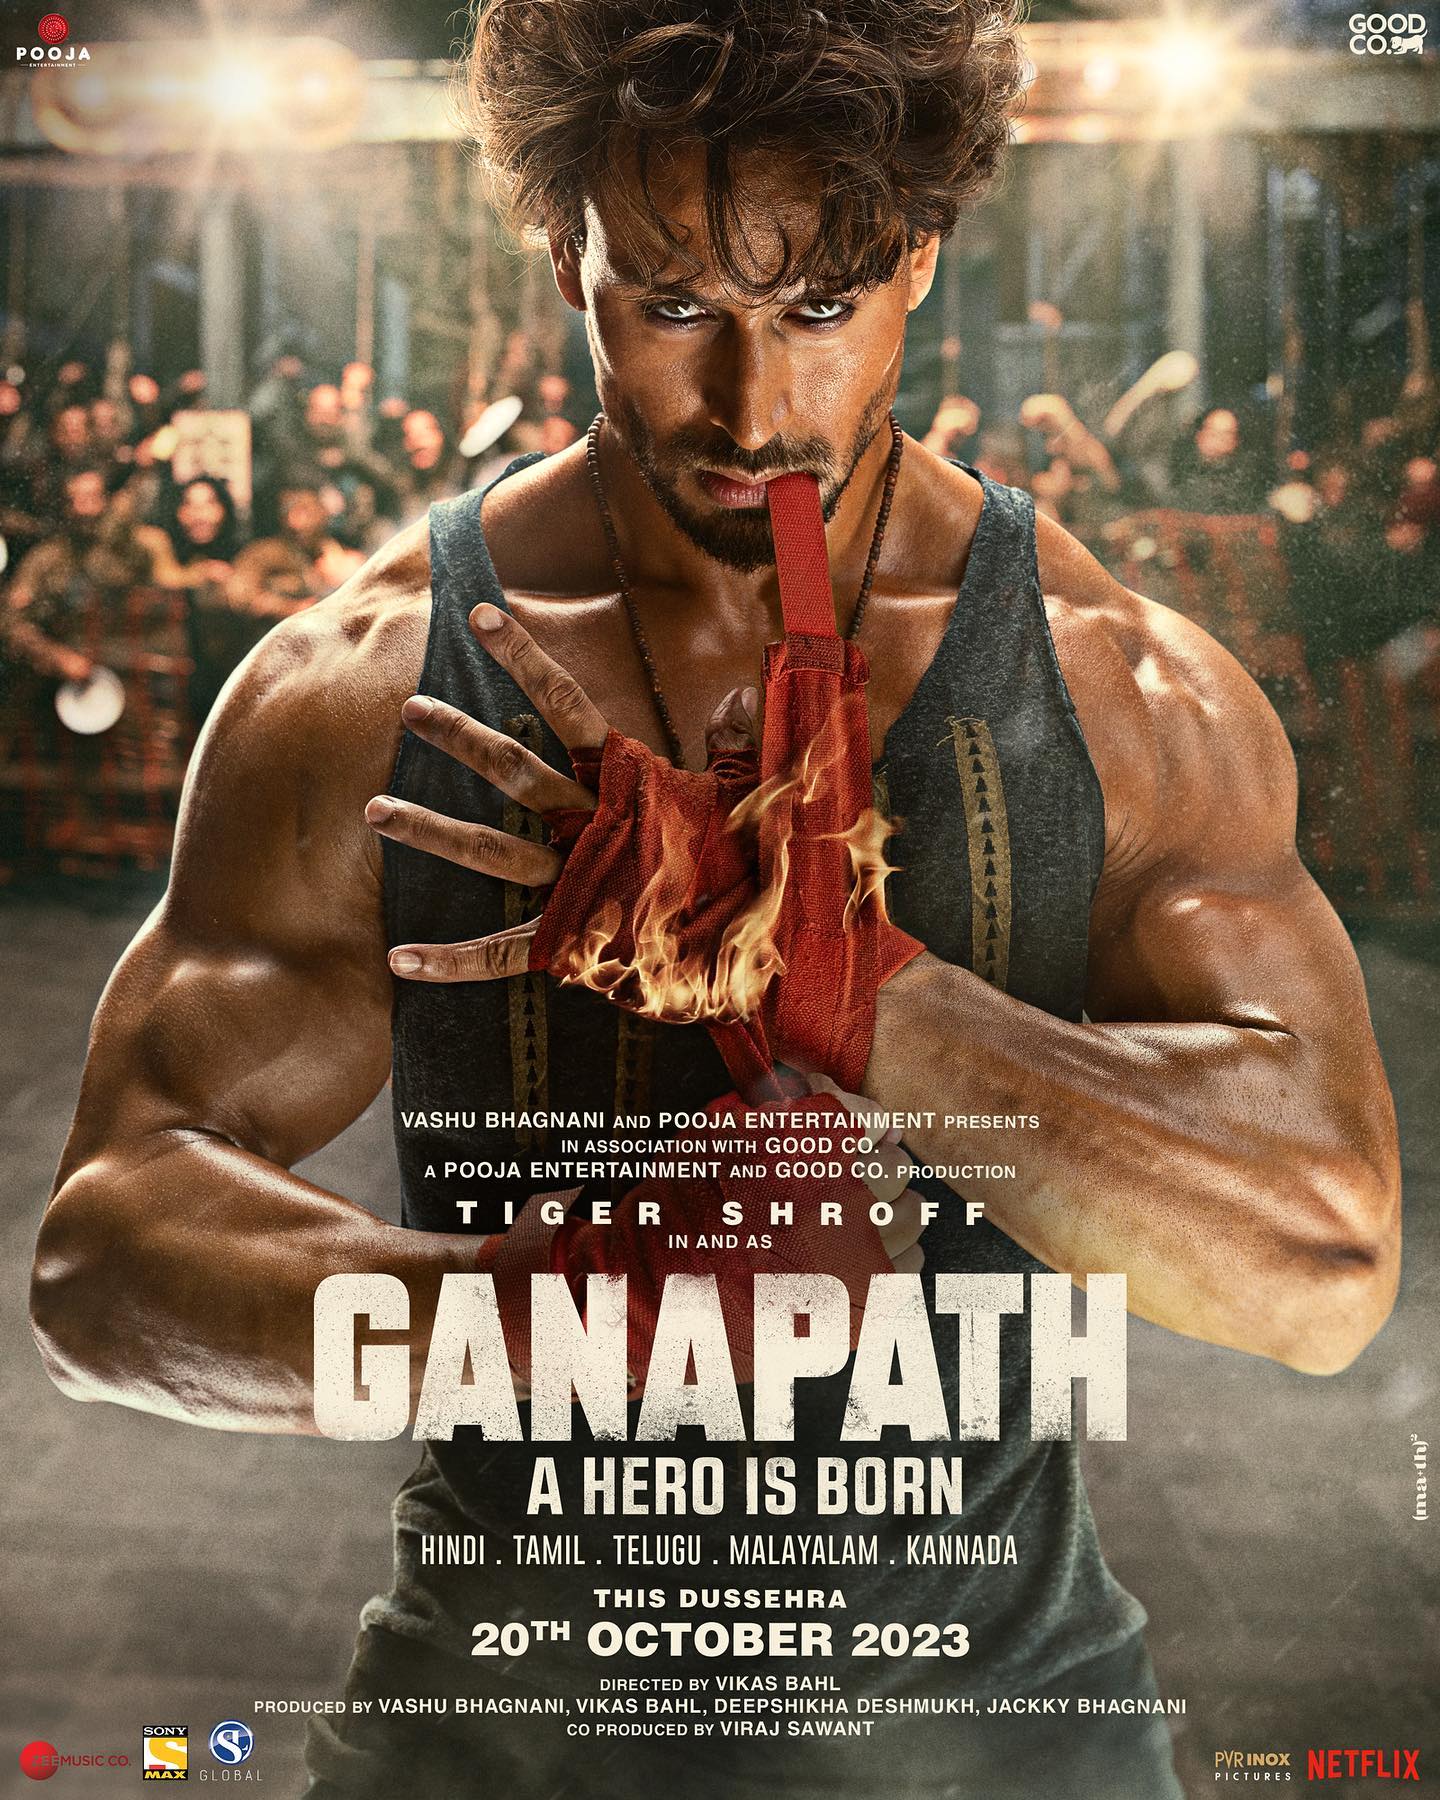 تاریخ اکران فیلم Ganapath + جزئیات کامل